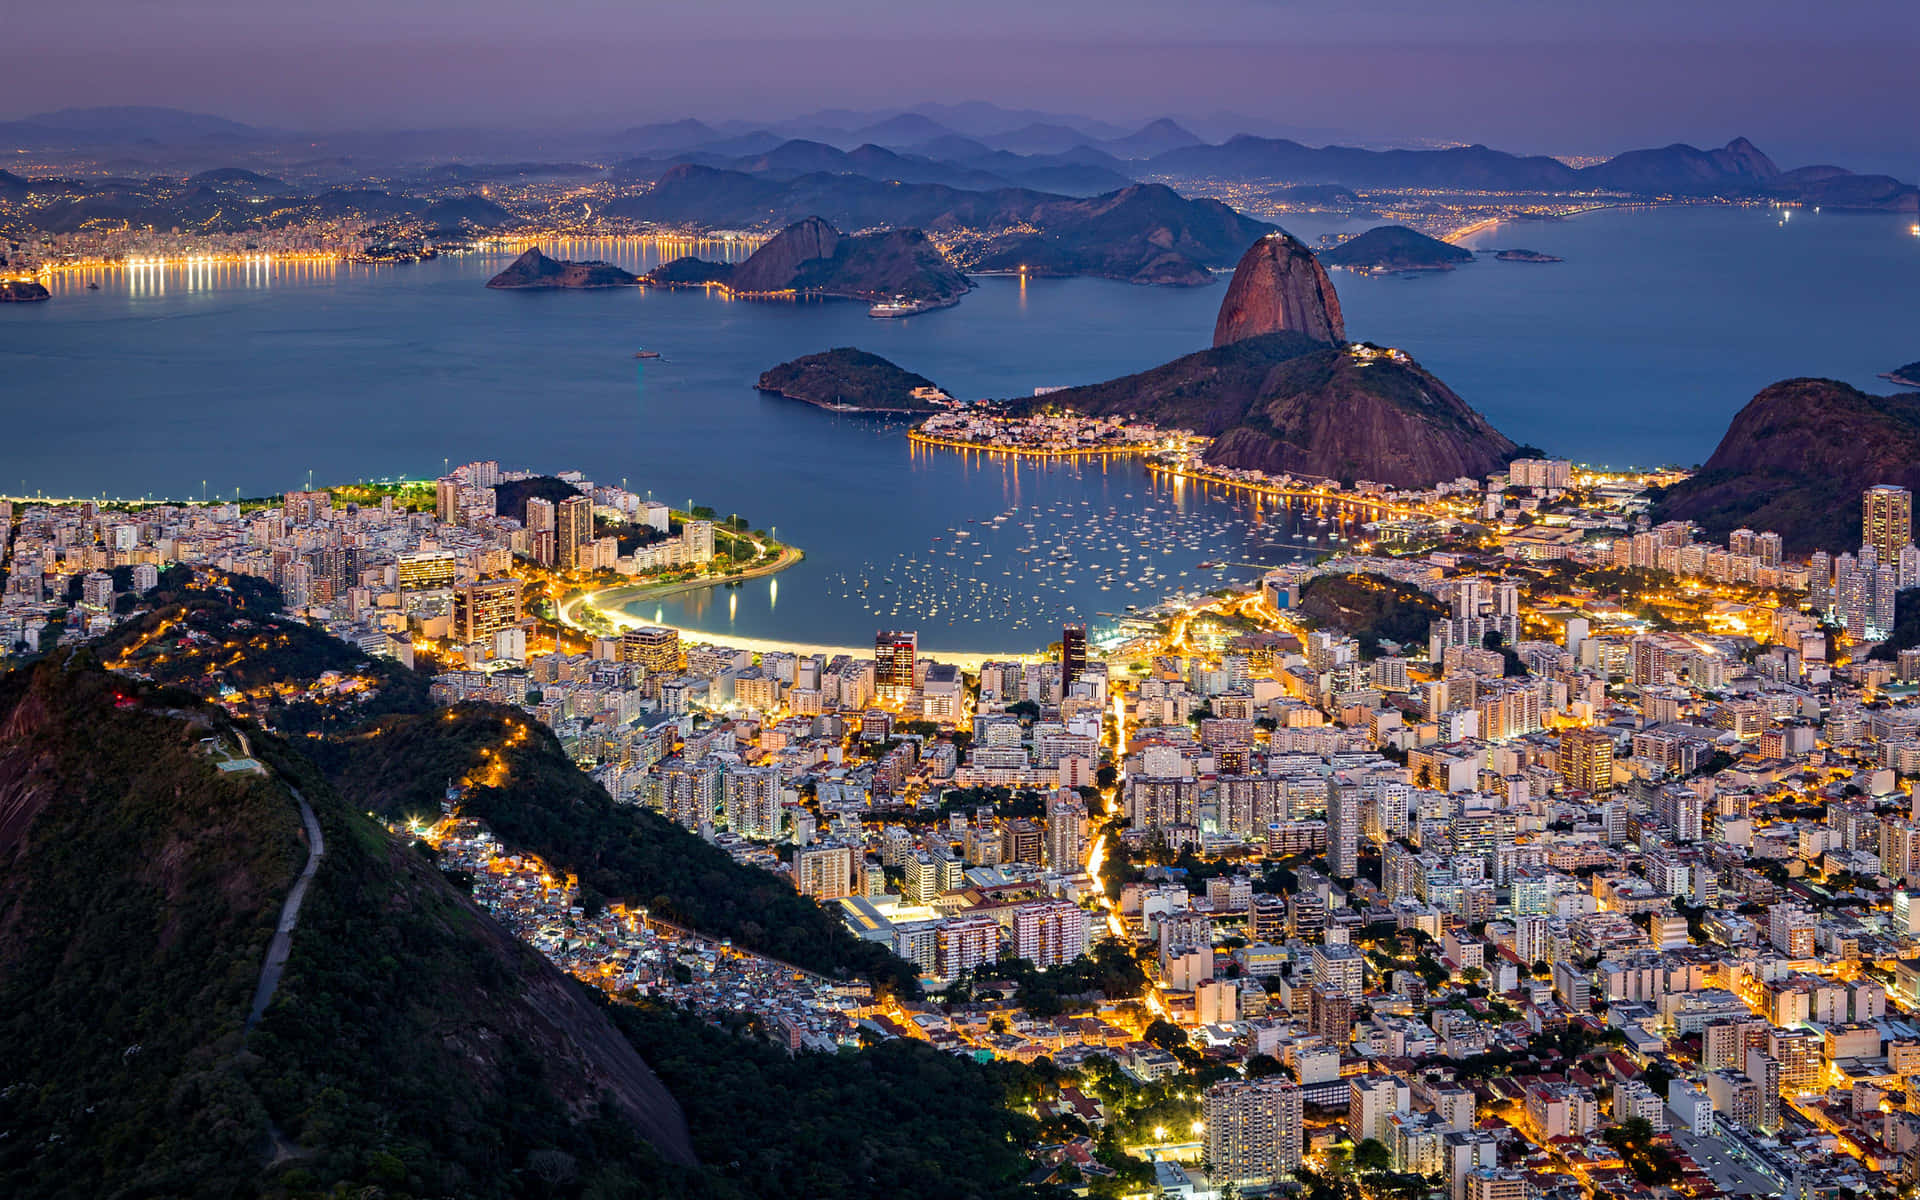 Rio De Janeiro, Brazil - Aerial View